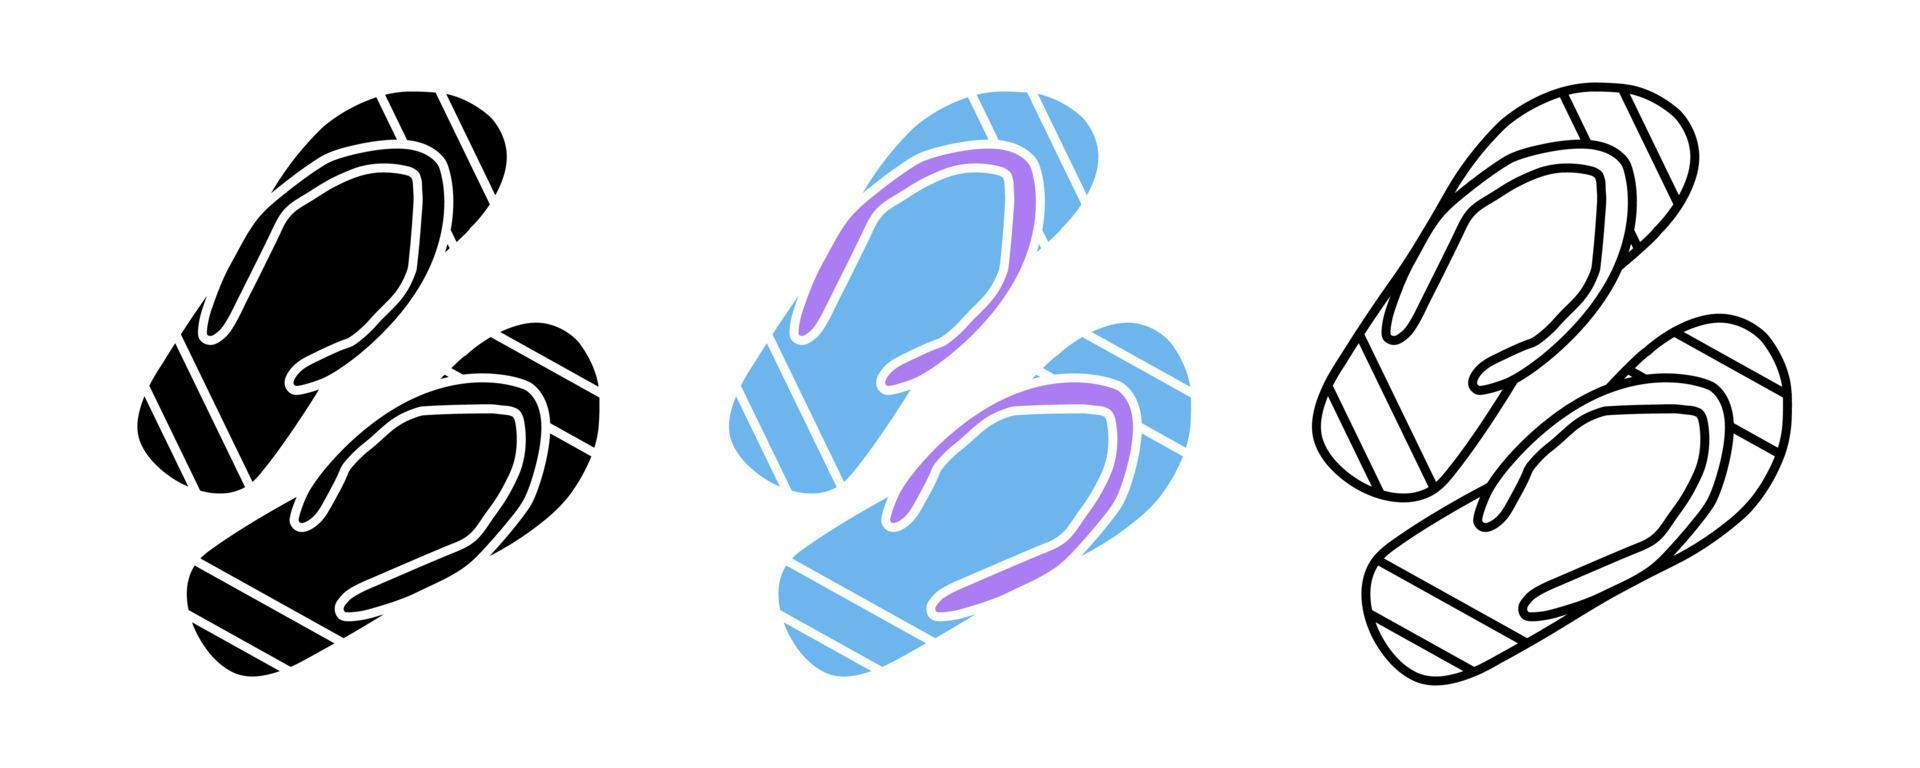 chancletas. conjunto de iconos vectoriales de zapatillas de casa, playa y baño. conjunto de filas editable. silueta, color, conjunto de iconos lineales. logo-web, elemento de diseño de icono. vector